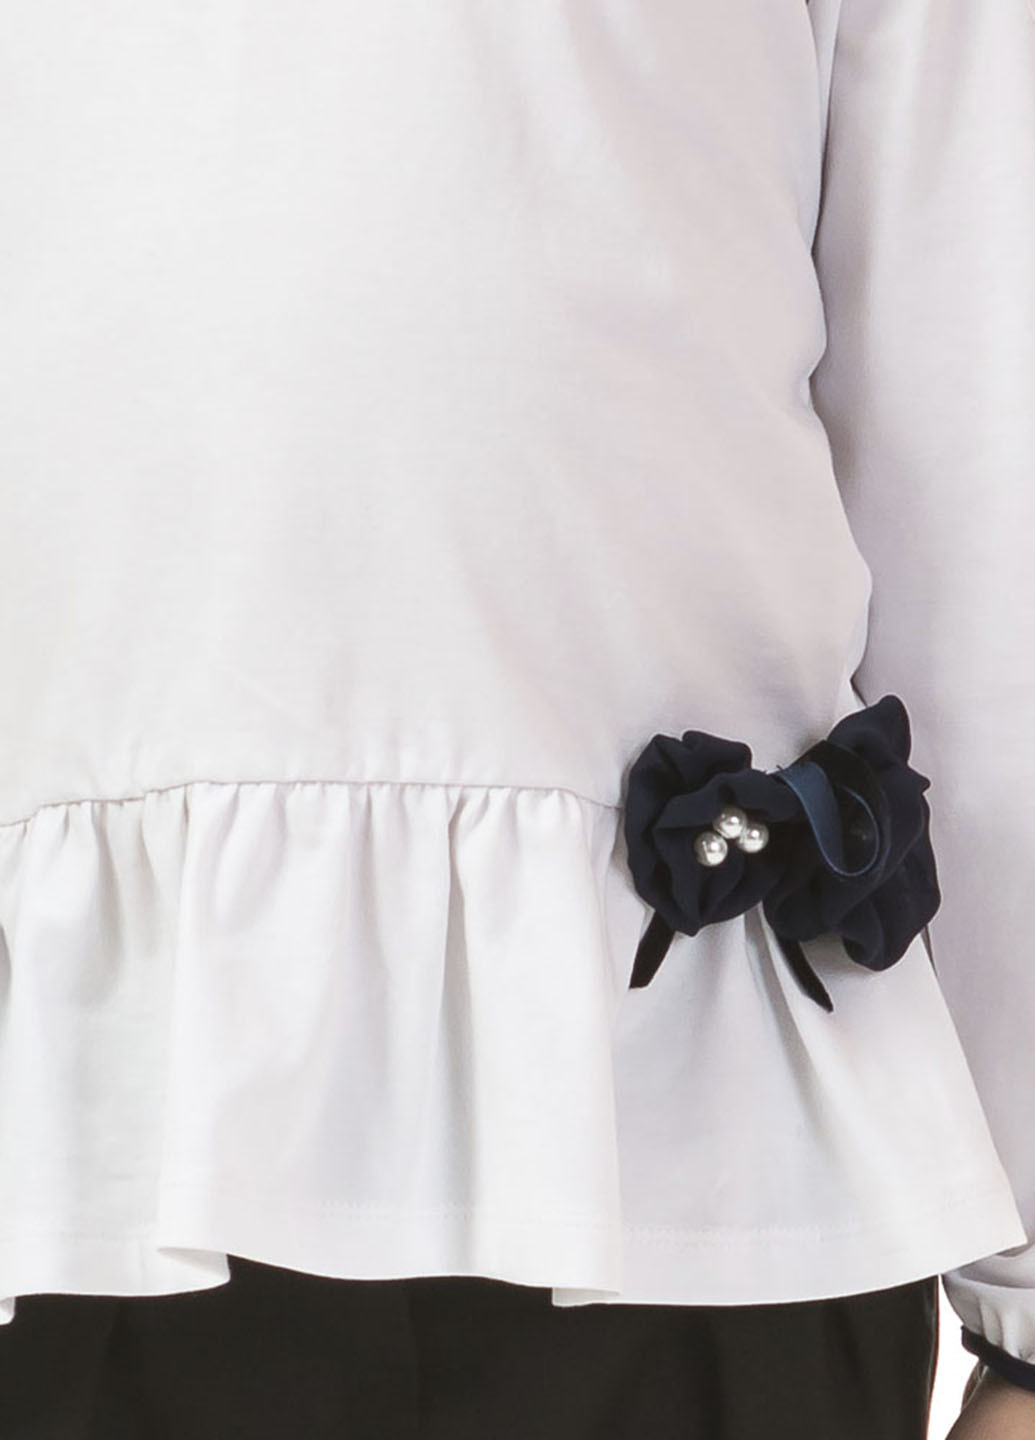 Белая однотонная блузка с длинным рукавом Kids Couture демисезонная